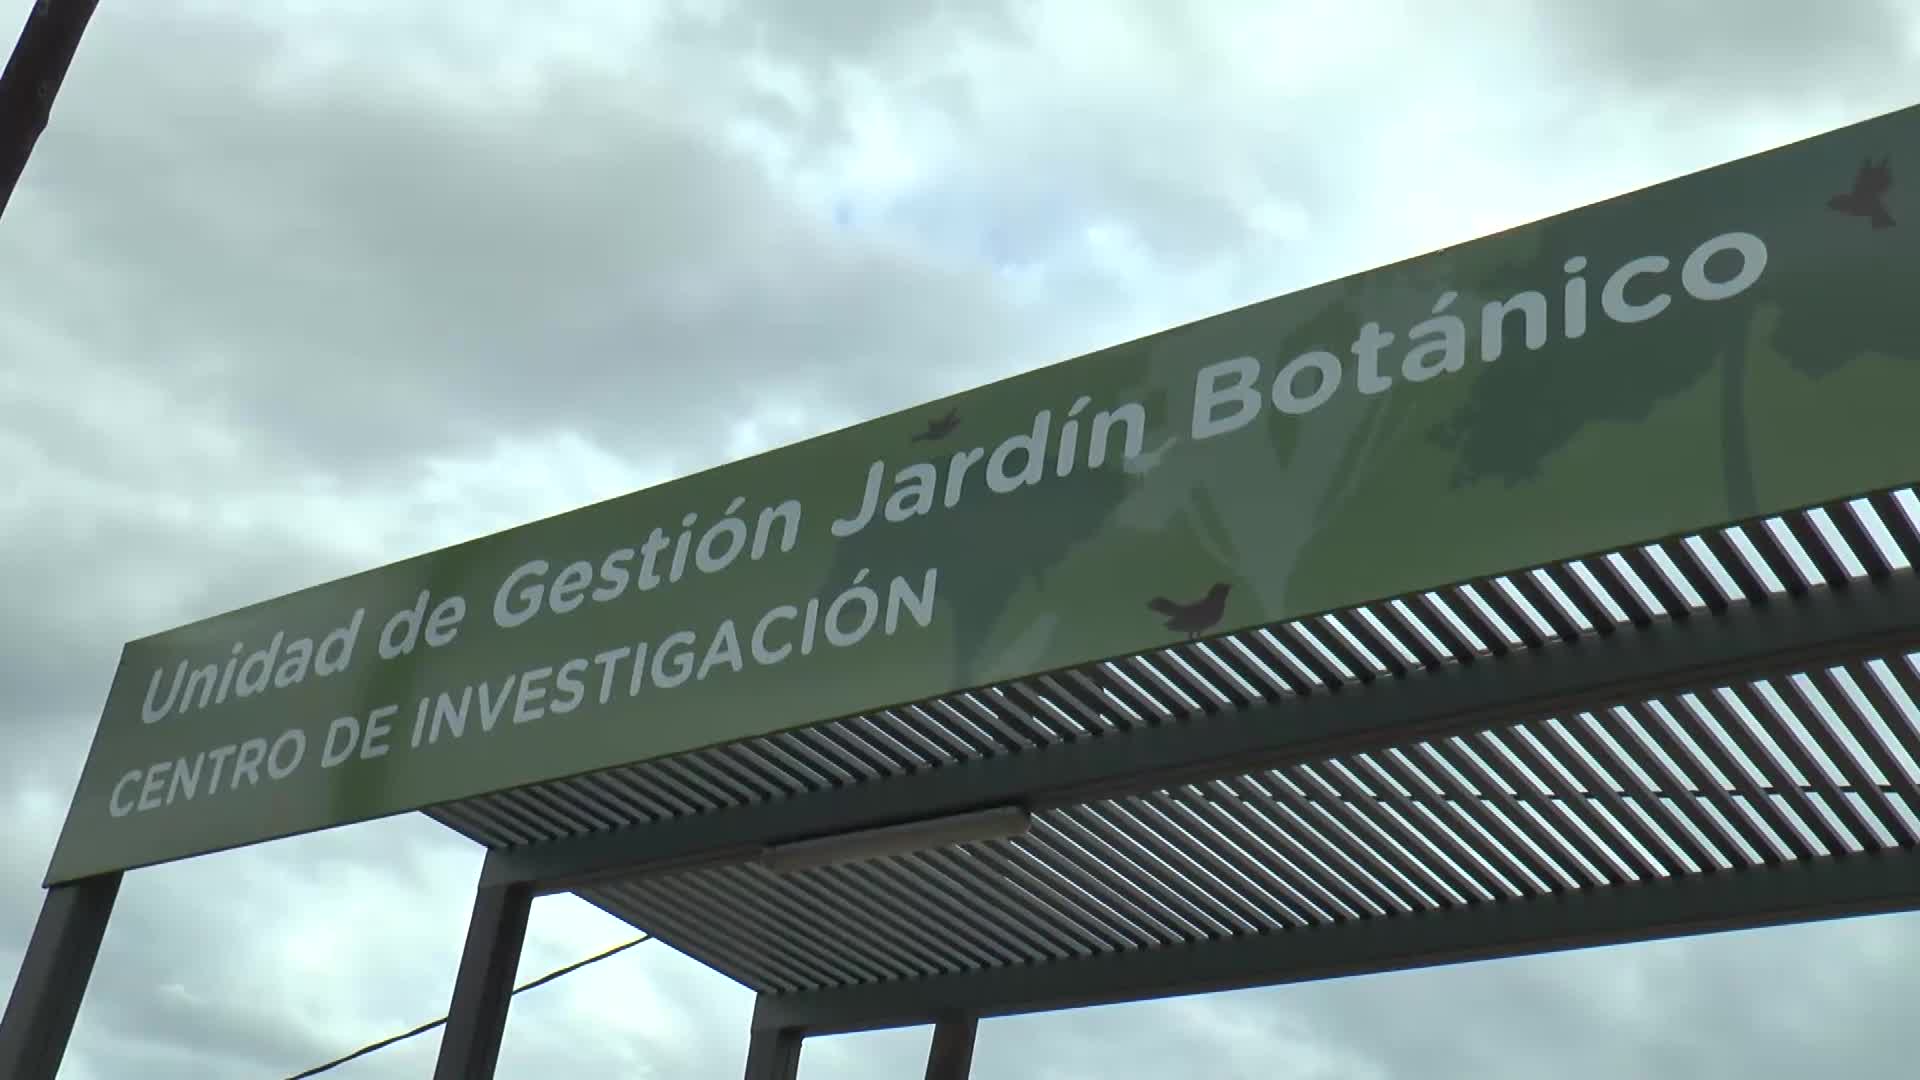 Jardín Botánico: se inauguró el centro de investigación cientifica 